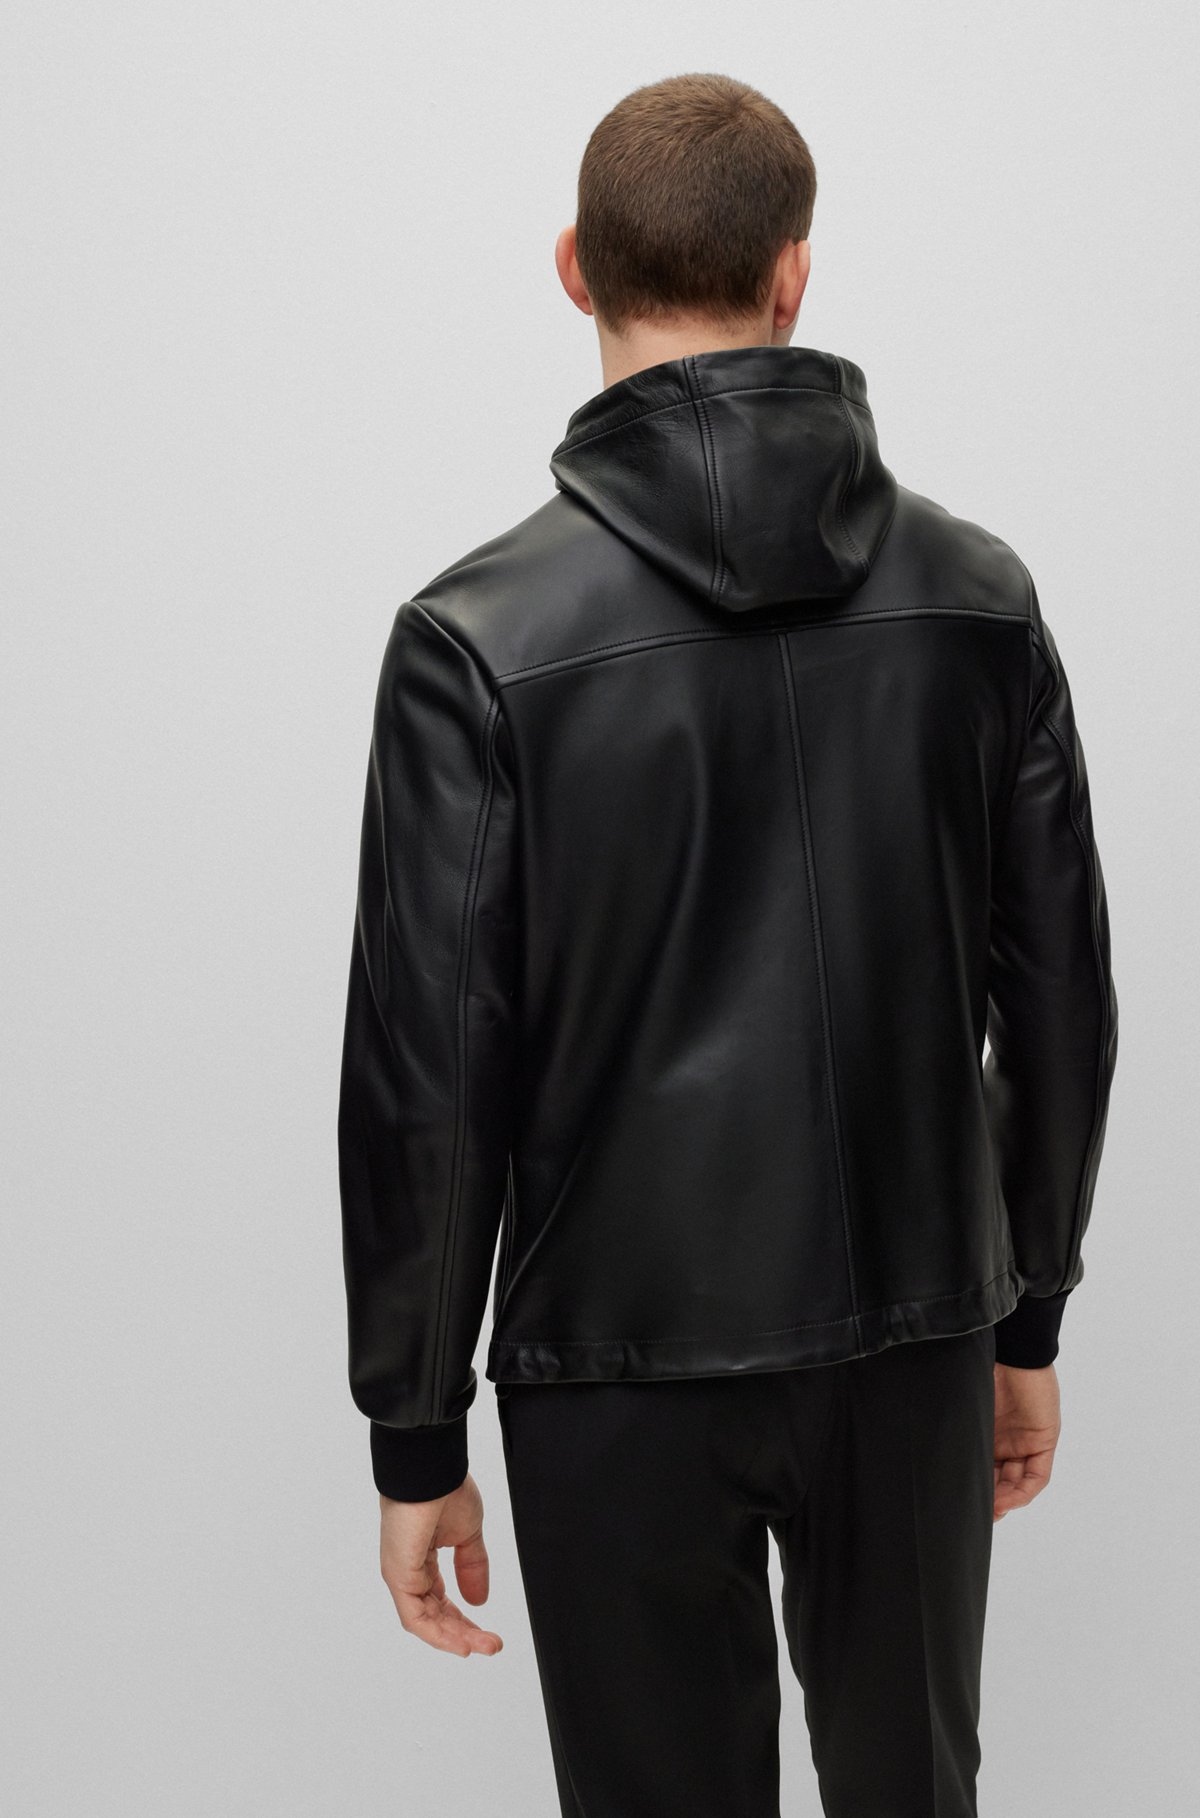 Zonder hoofd bevestigen Verzoenen BOSS - Hooded leather jacket with two-way zip